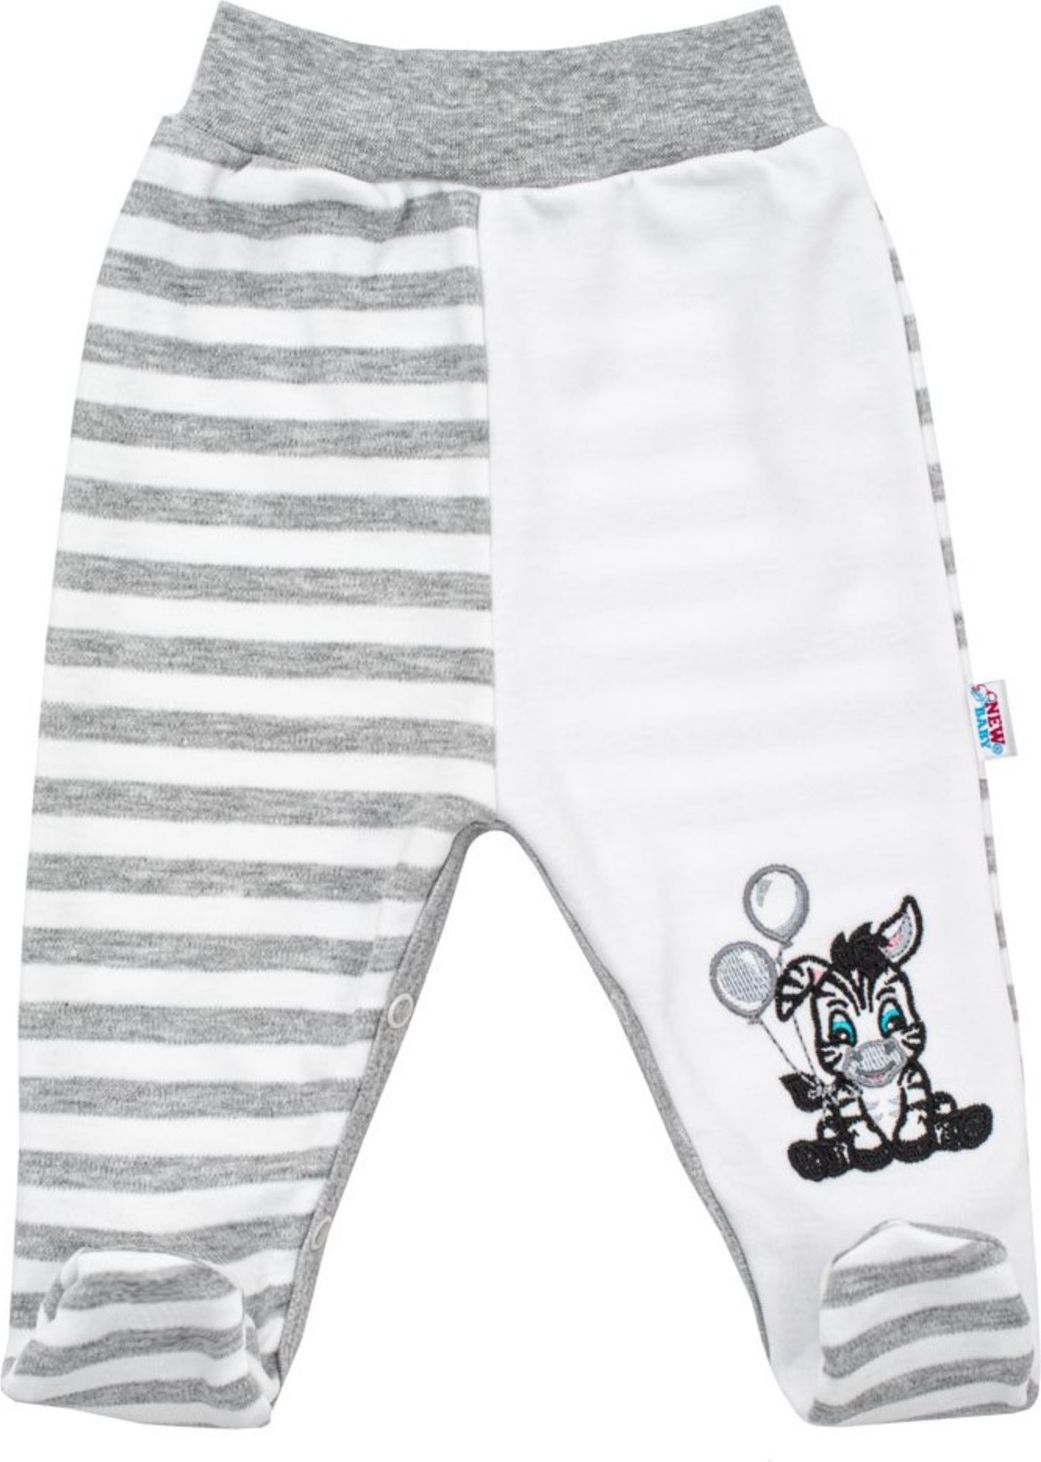 Kojenecké bavlněné polodupačky New Baby Zebra exclusive - Kojenecké bavlněné polodupačky New Baby Zebra exclusive - obrázek 1